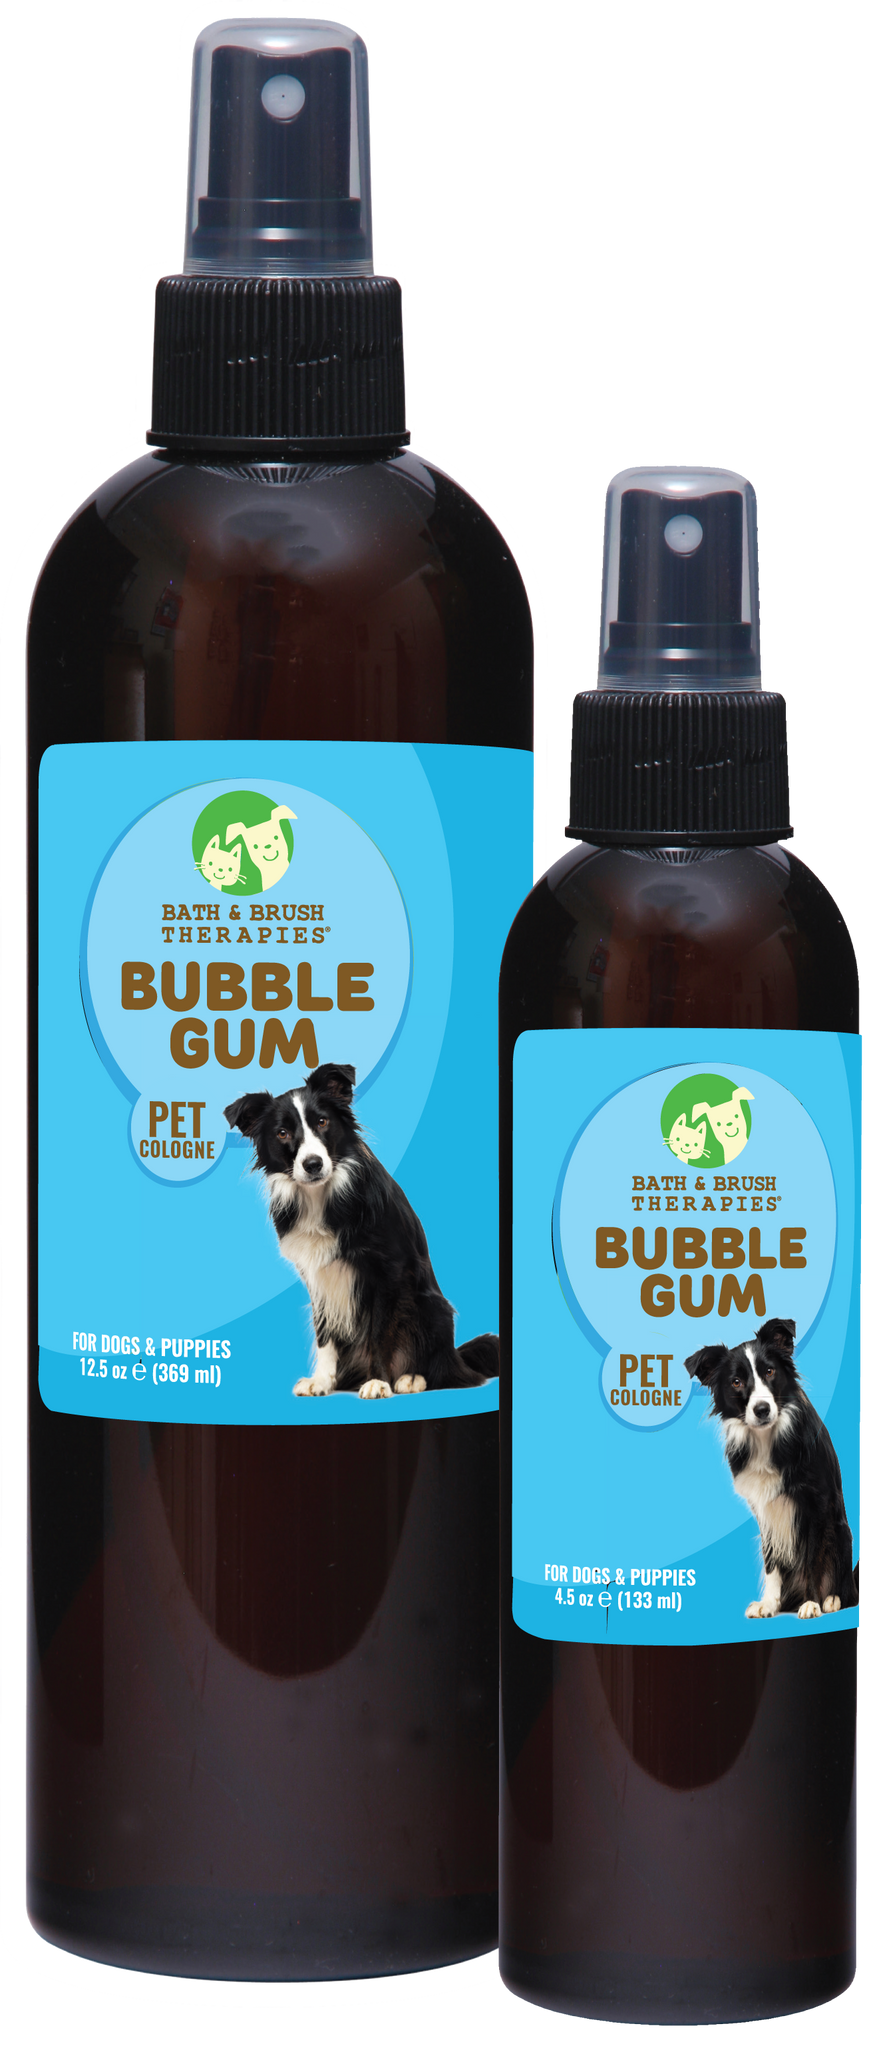 Bubble Gum Pet Cologne | Bath & Brush Therapies®